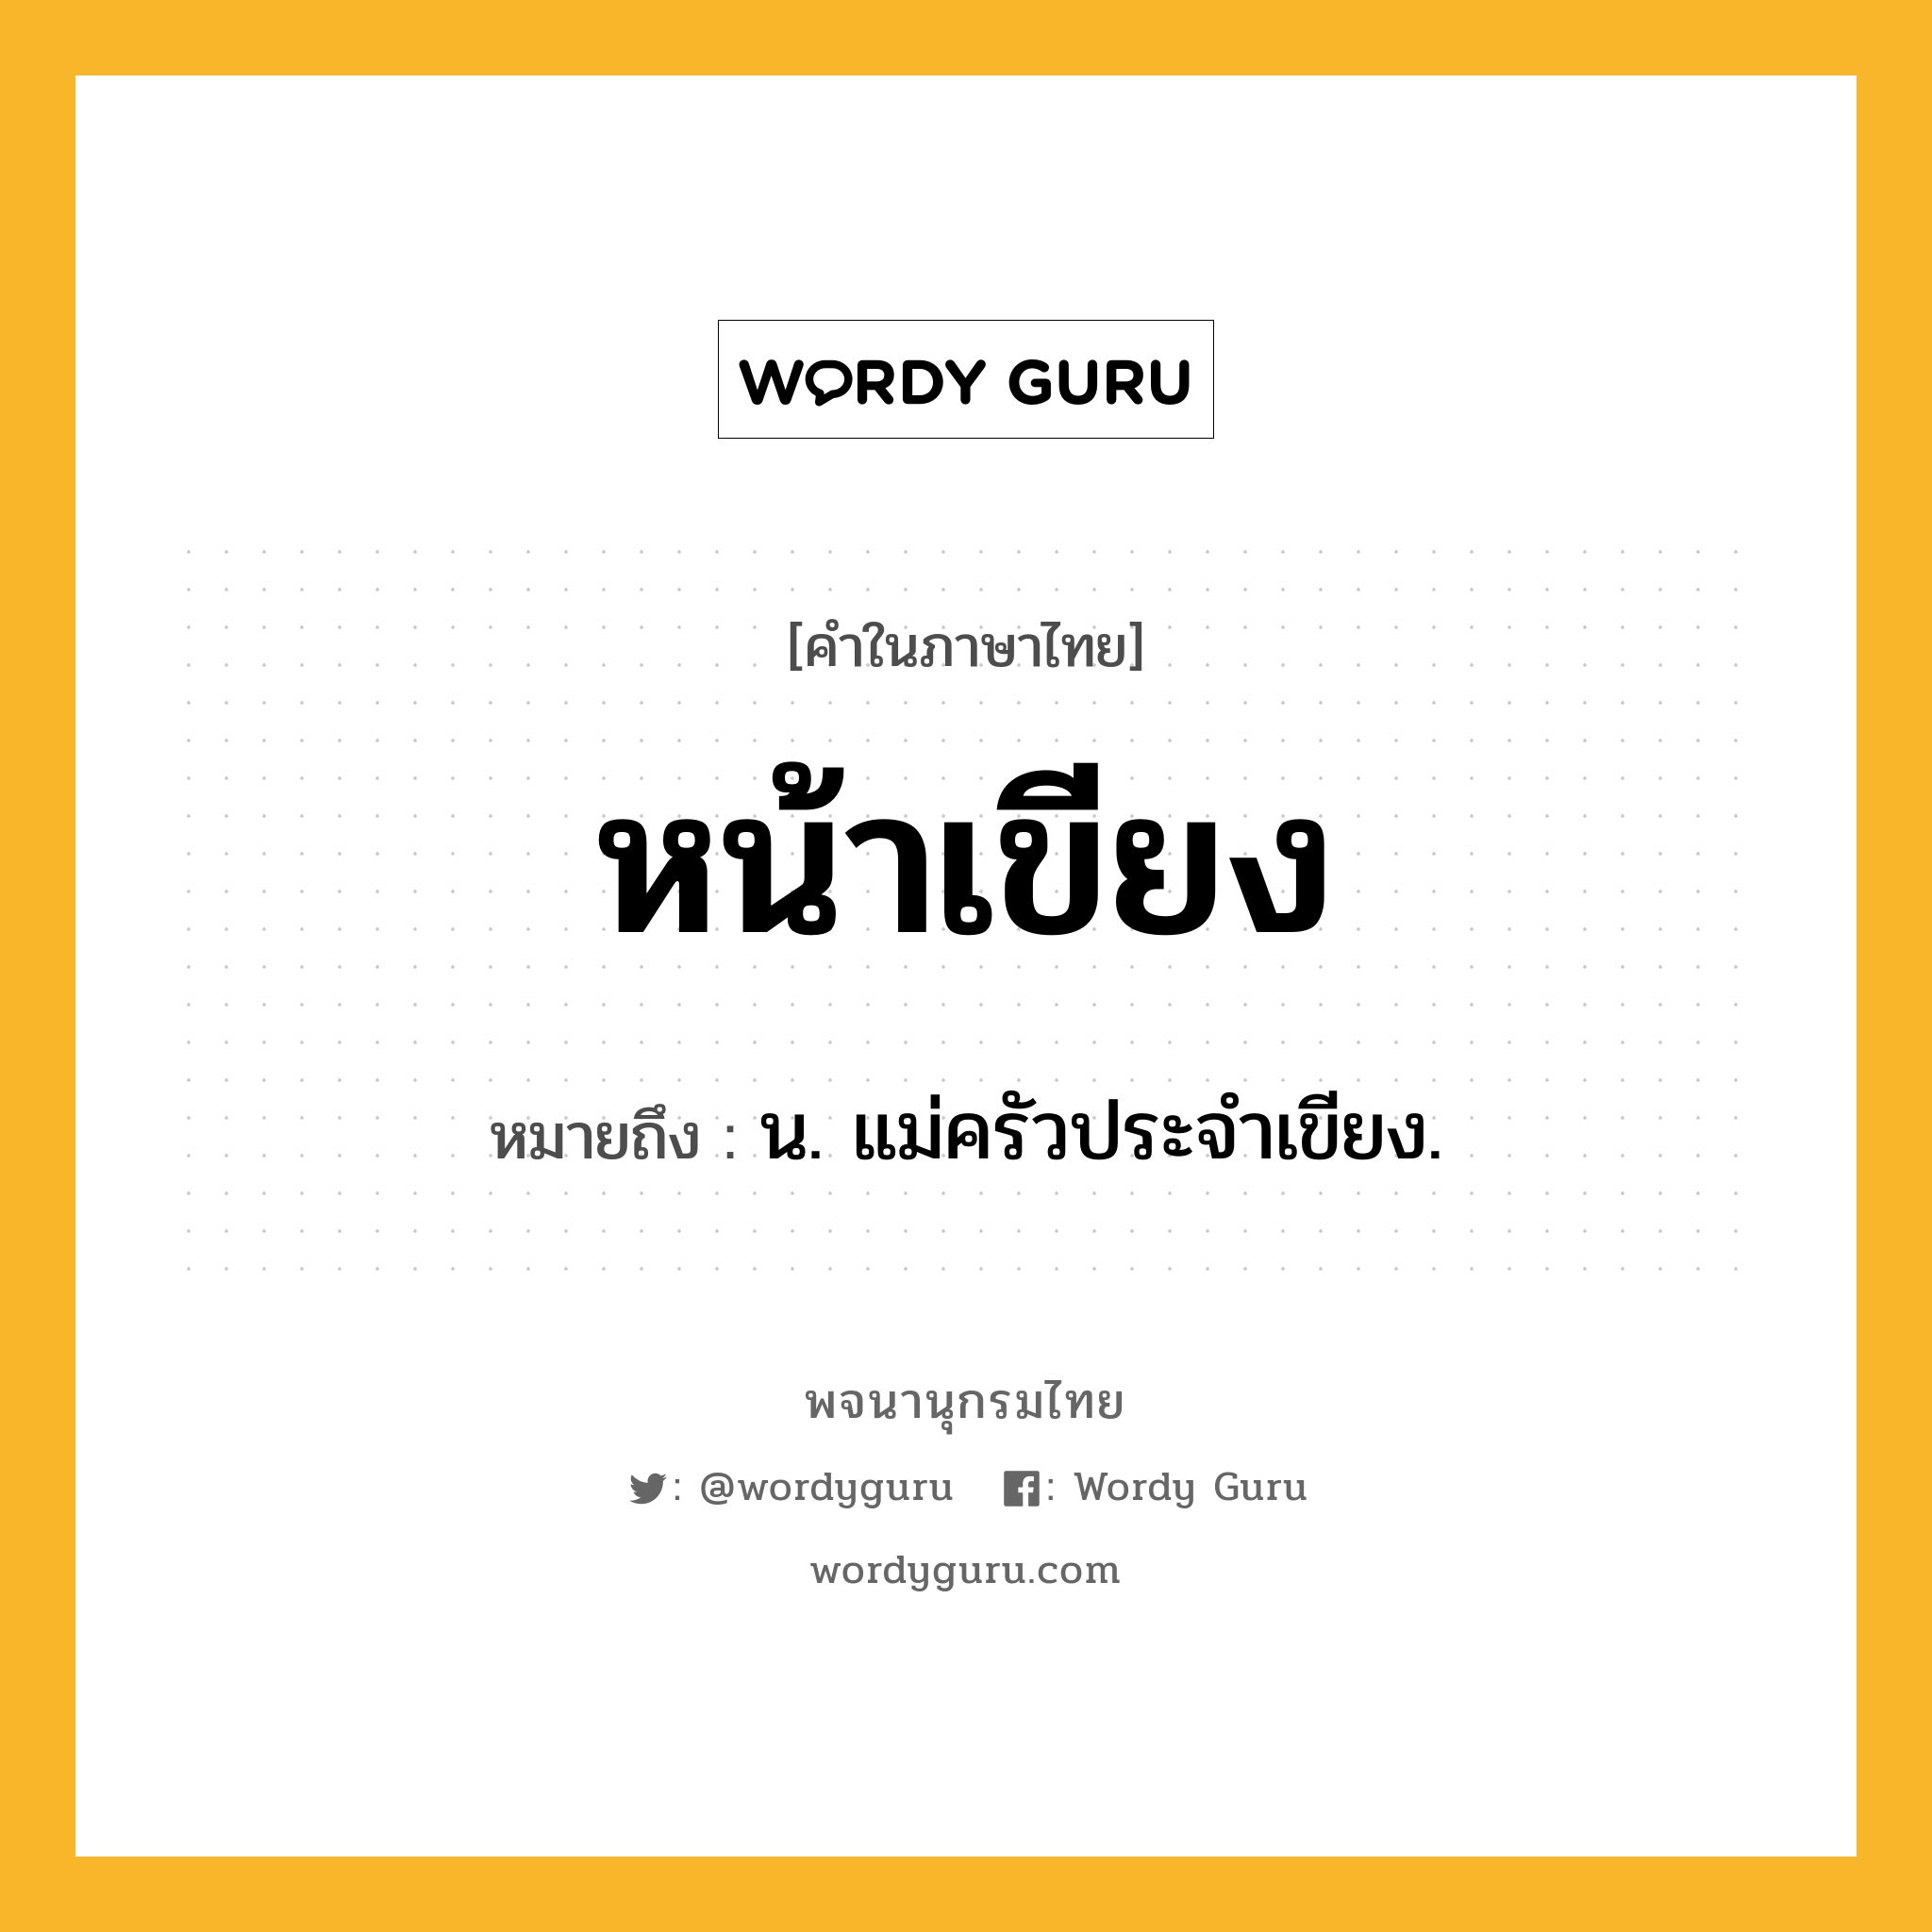 หน้าเขียง ความหมาย หมายถึงอะไร?, คำในภาษาไทย หน้าเขียง หมายถึง น. แม่ครัวประจำเขียง.